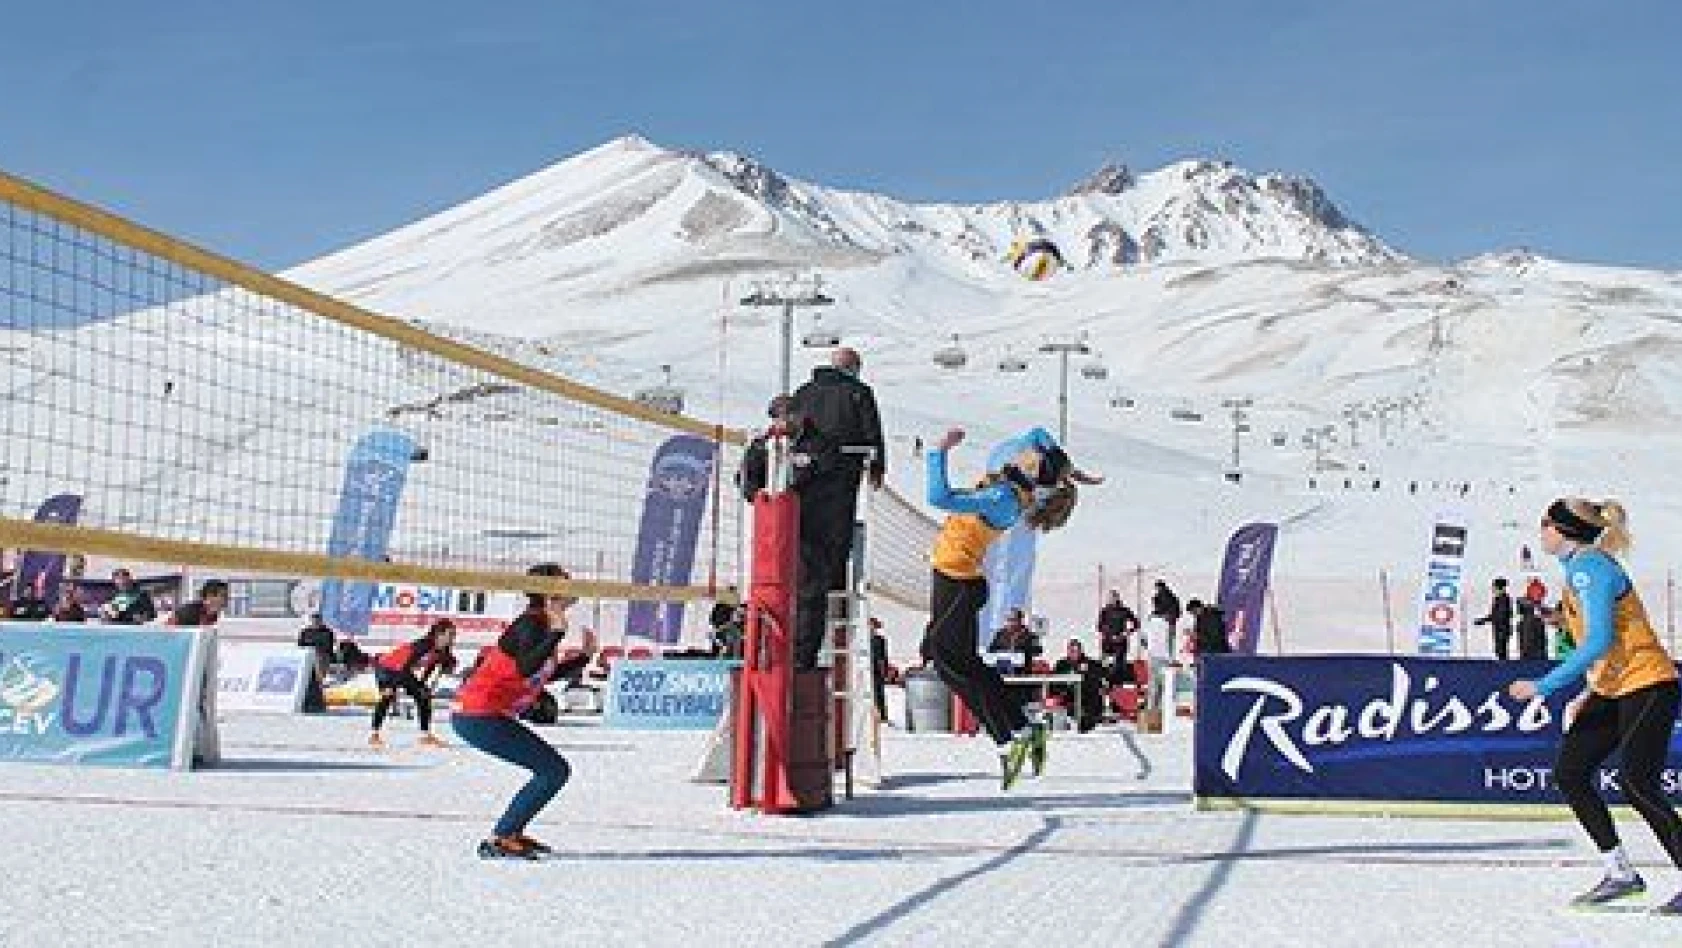 Avrupa Kar Voleybolu Kupası Erciyes'te ikinci kez yapılacak 